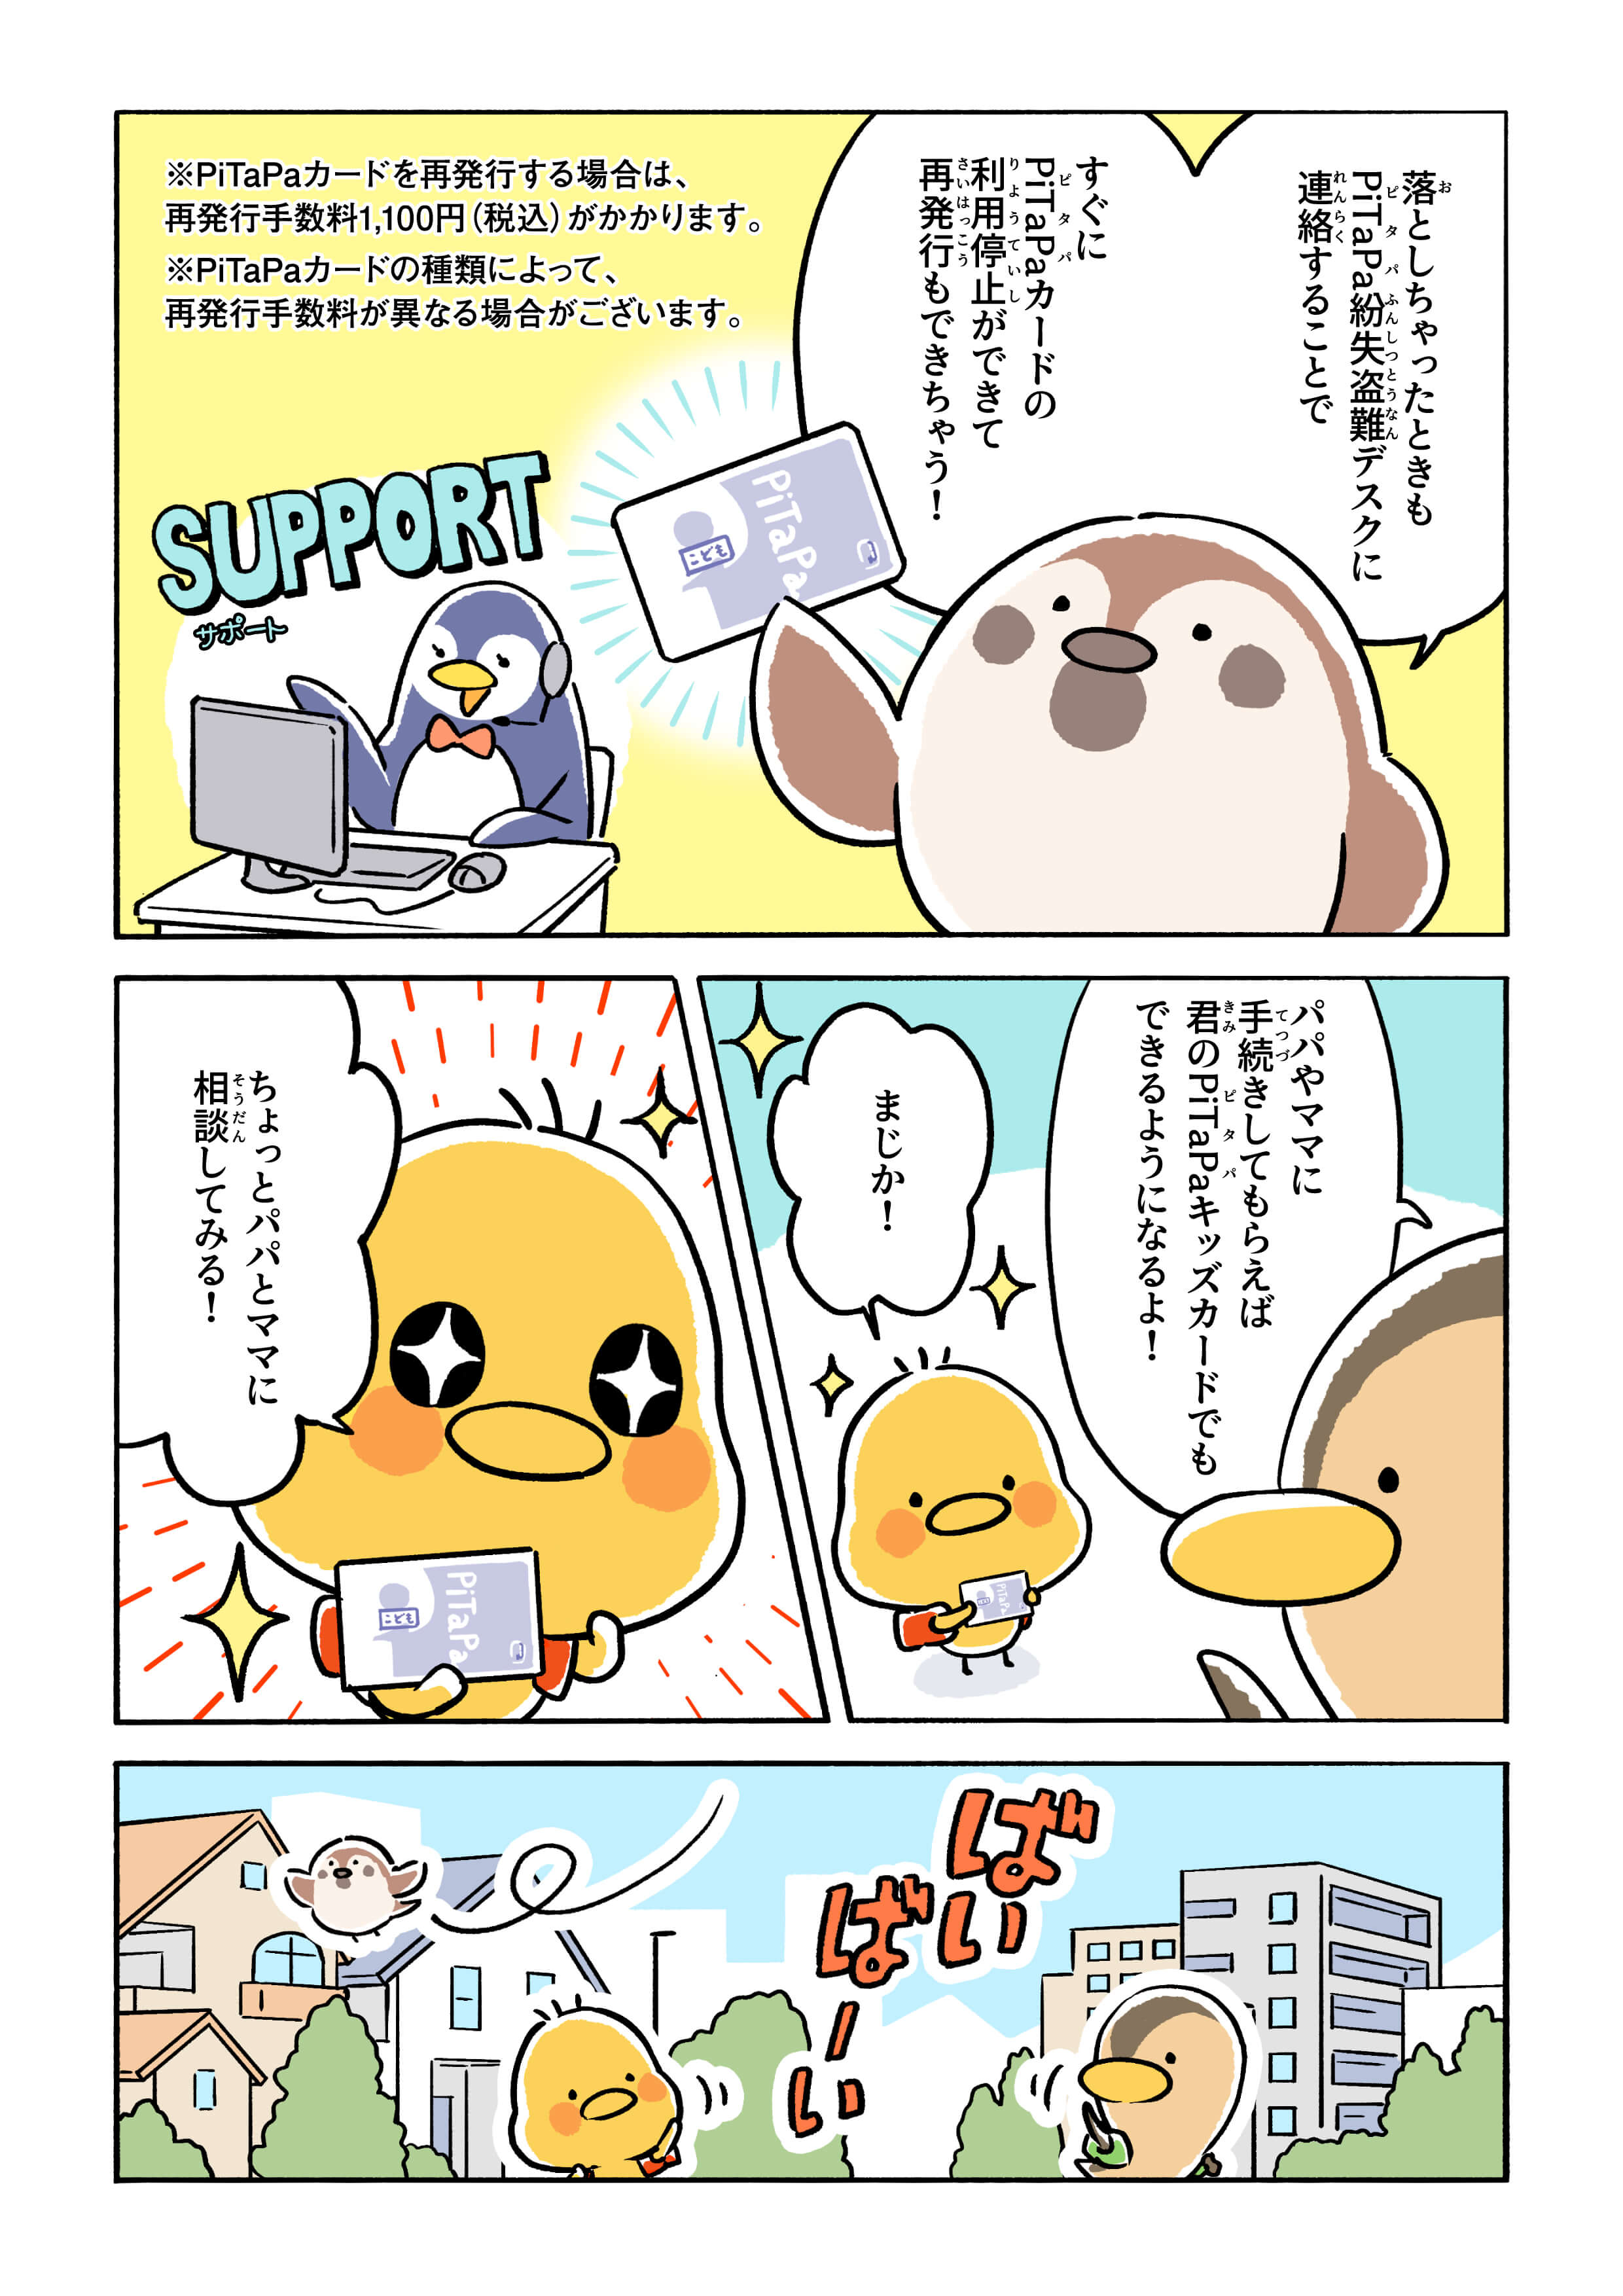 PiTaPaキッズカード漫画04